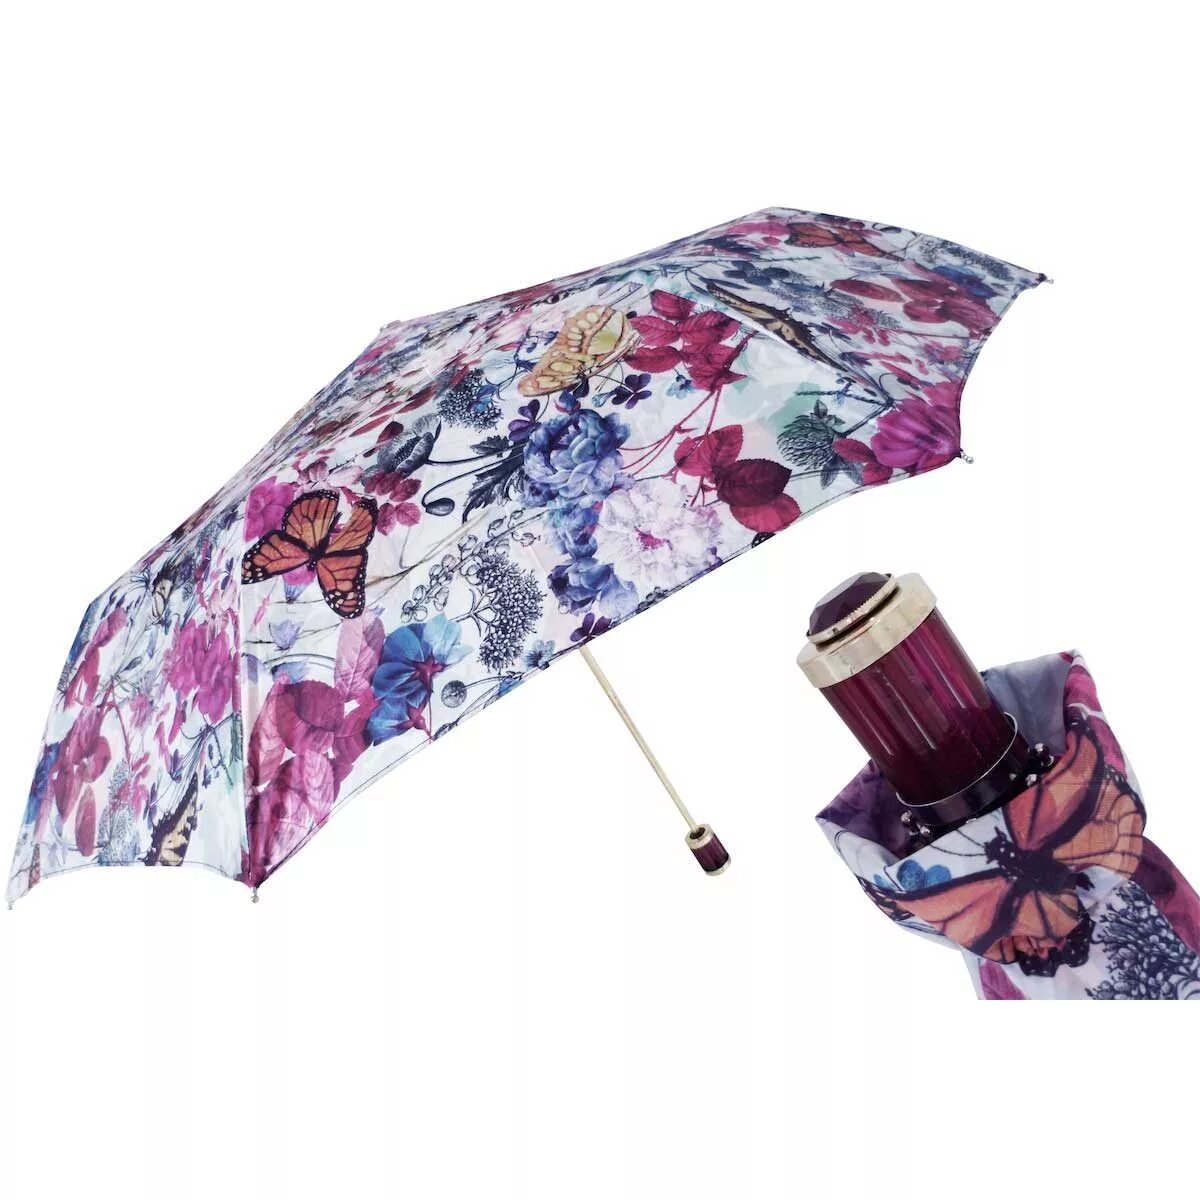 Купить зонтик женский автомат. Зонт Пасотти пантера. Зонт Pasotti женский автомат. Элитный зонт Pasotti. Pasotti Ombrelli зонт верх.